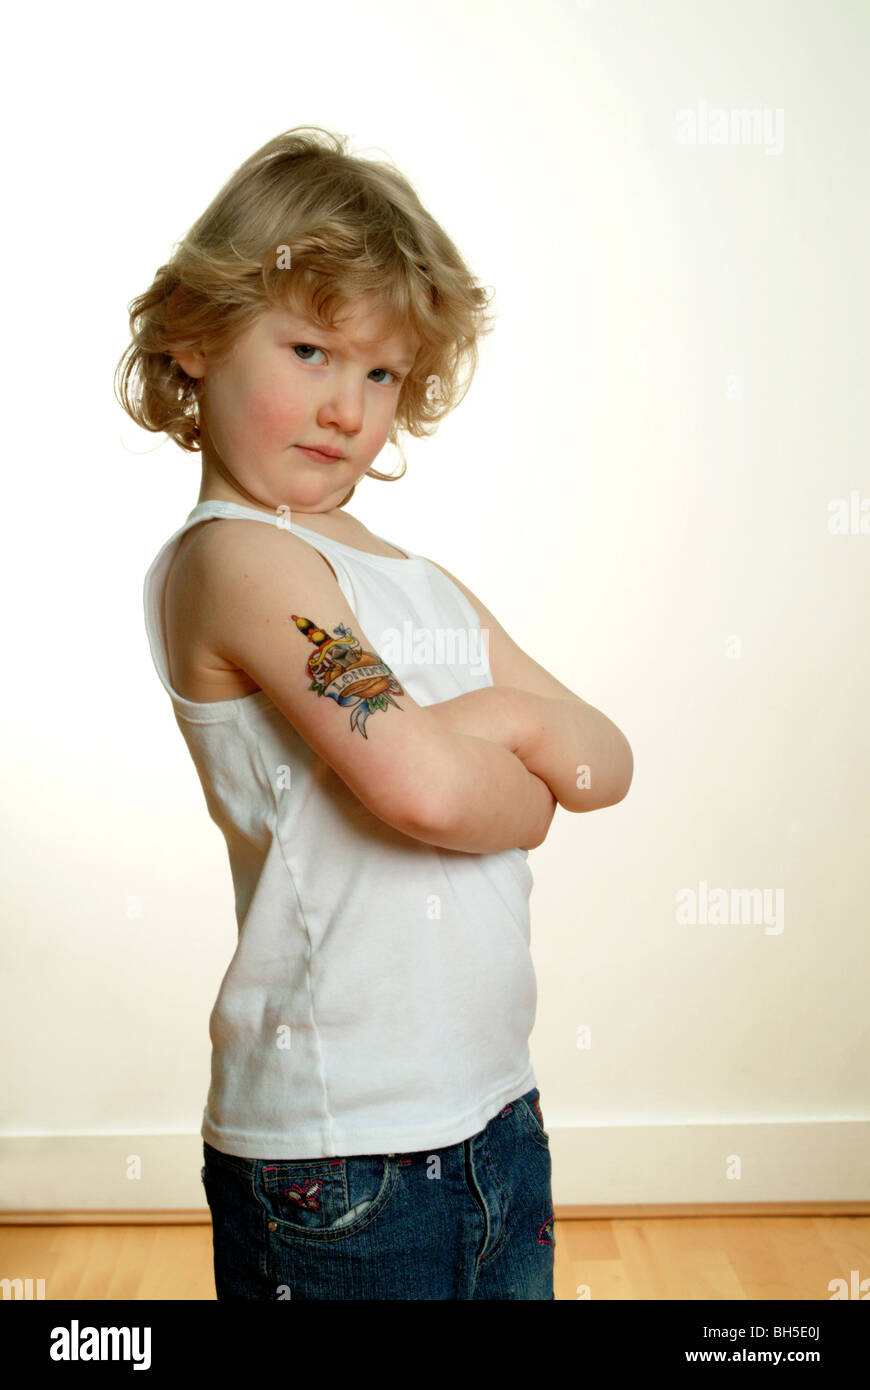 Une jeune fille de race blanche se tient avec ses bras croisés avec un faux tatouage de Londres sur son bras supérieur. Banque D'Images